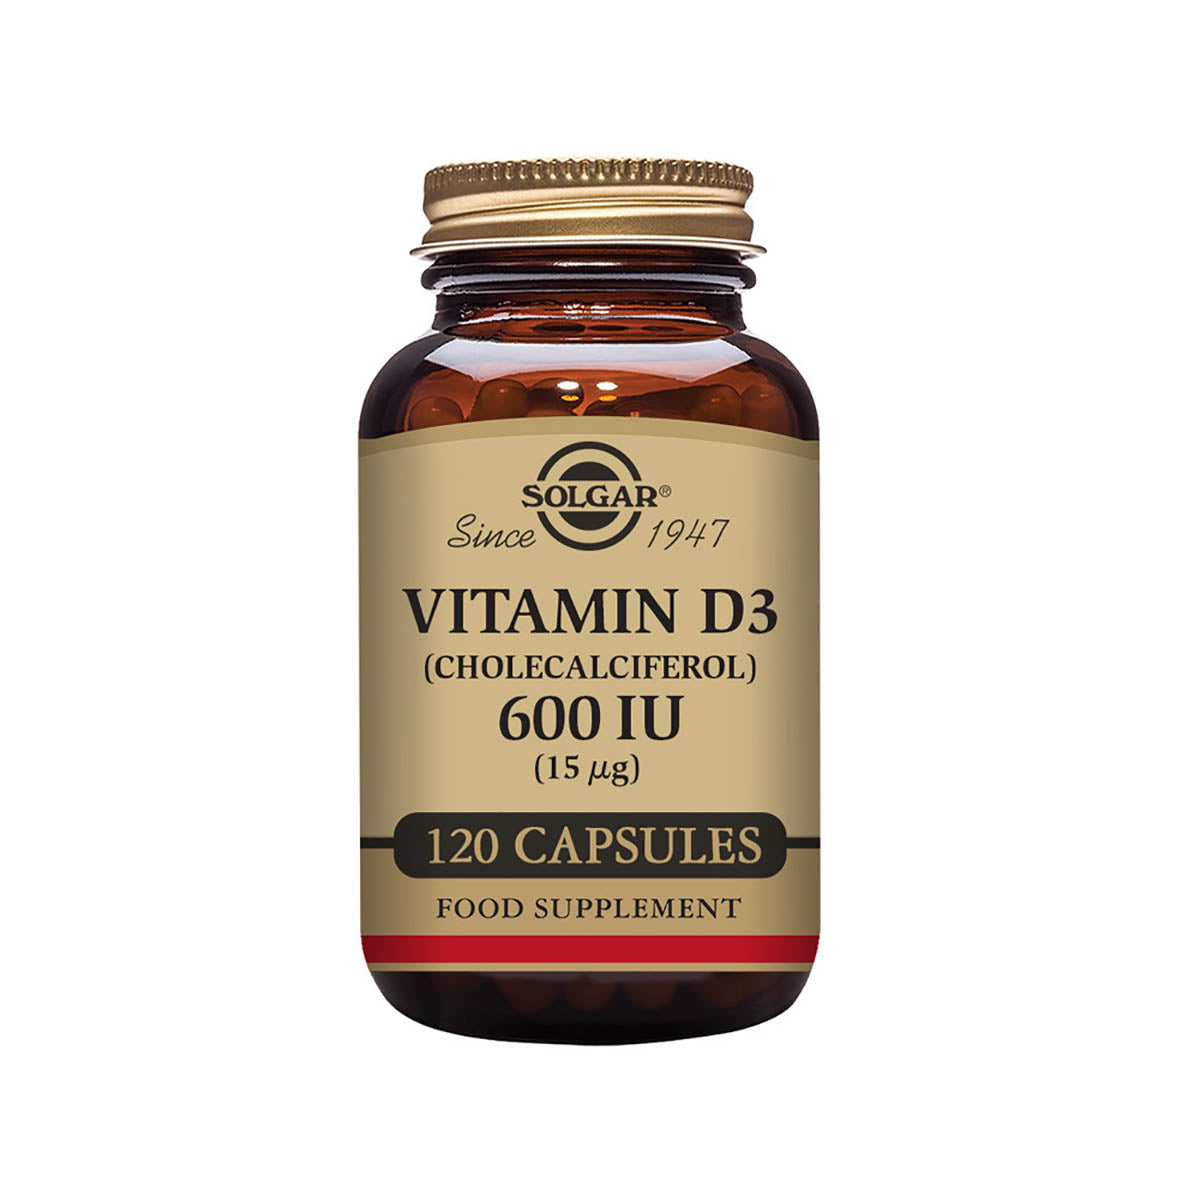 Solgar® Vitamin D3 (Cholecalciferol) 600 IU (15 µg) Vegetable Capsules - Pack of 120